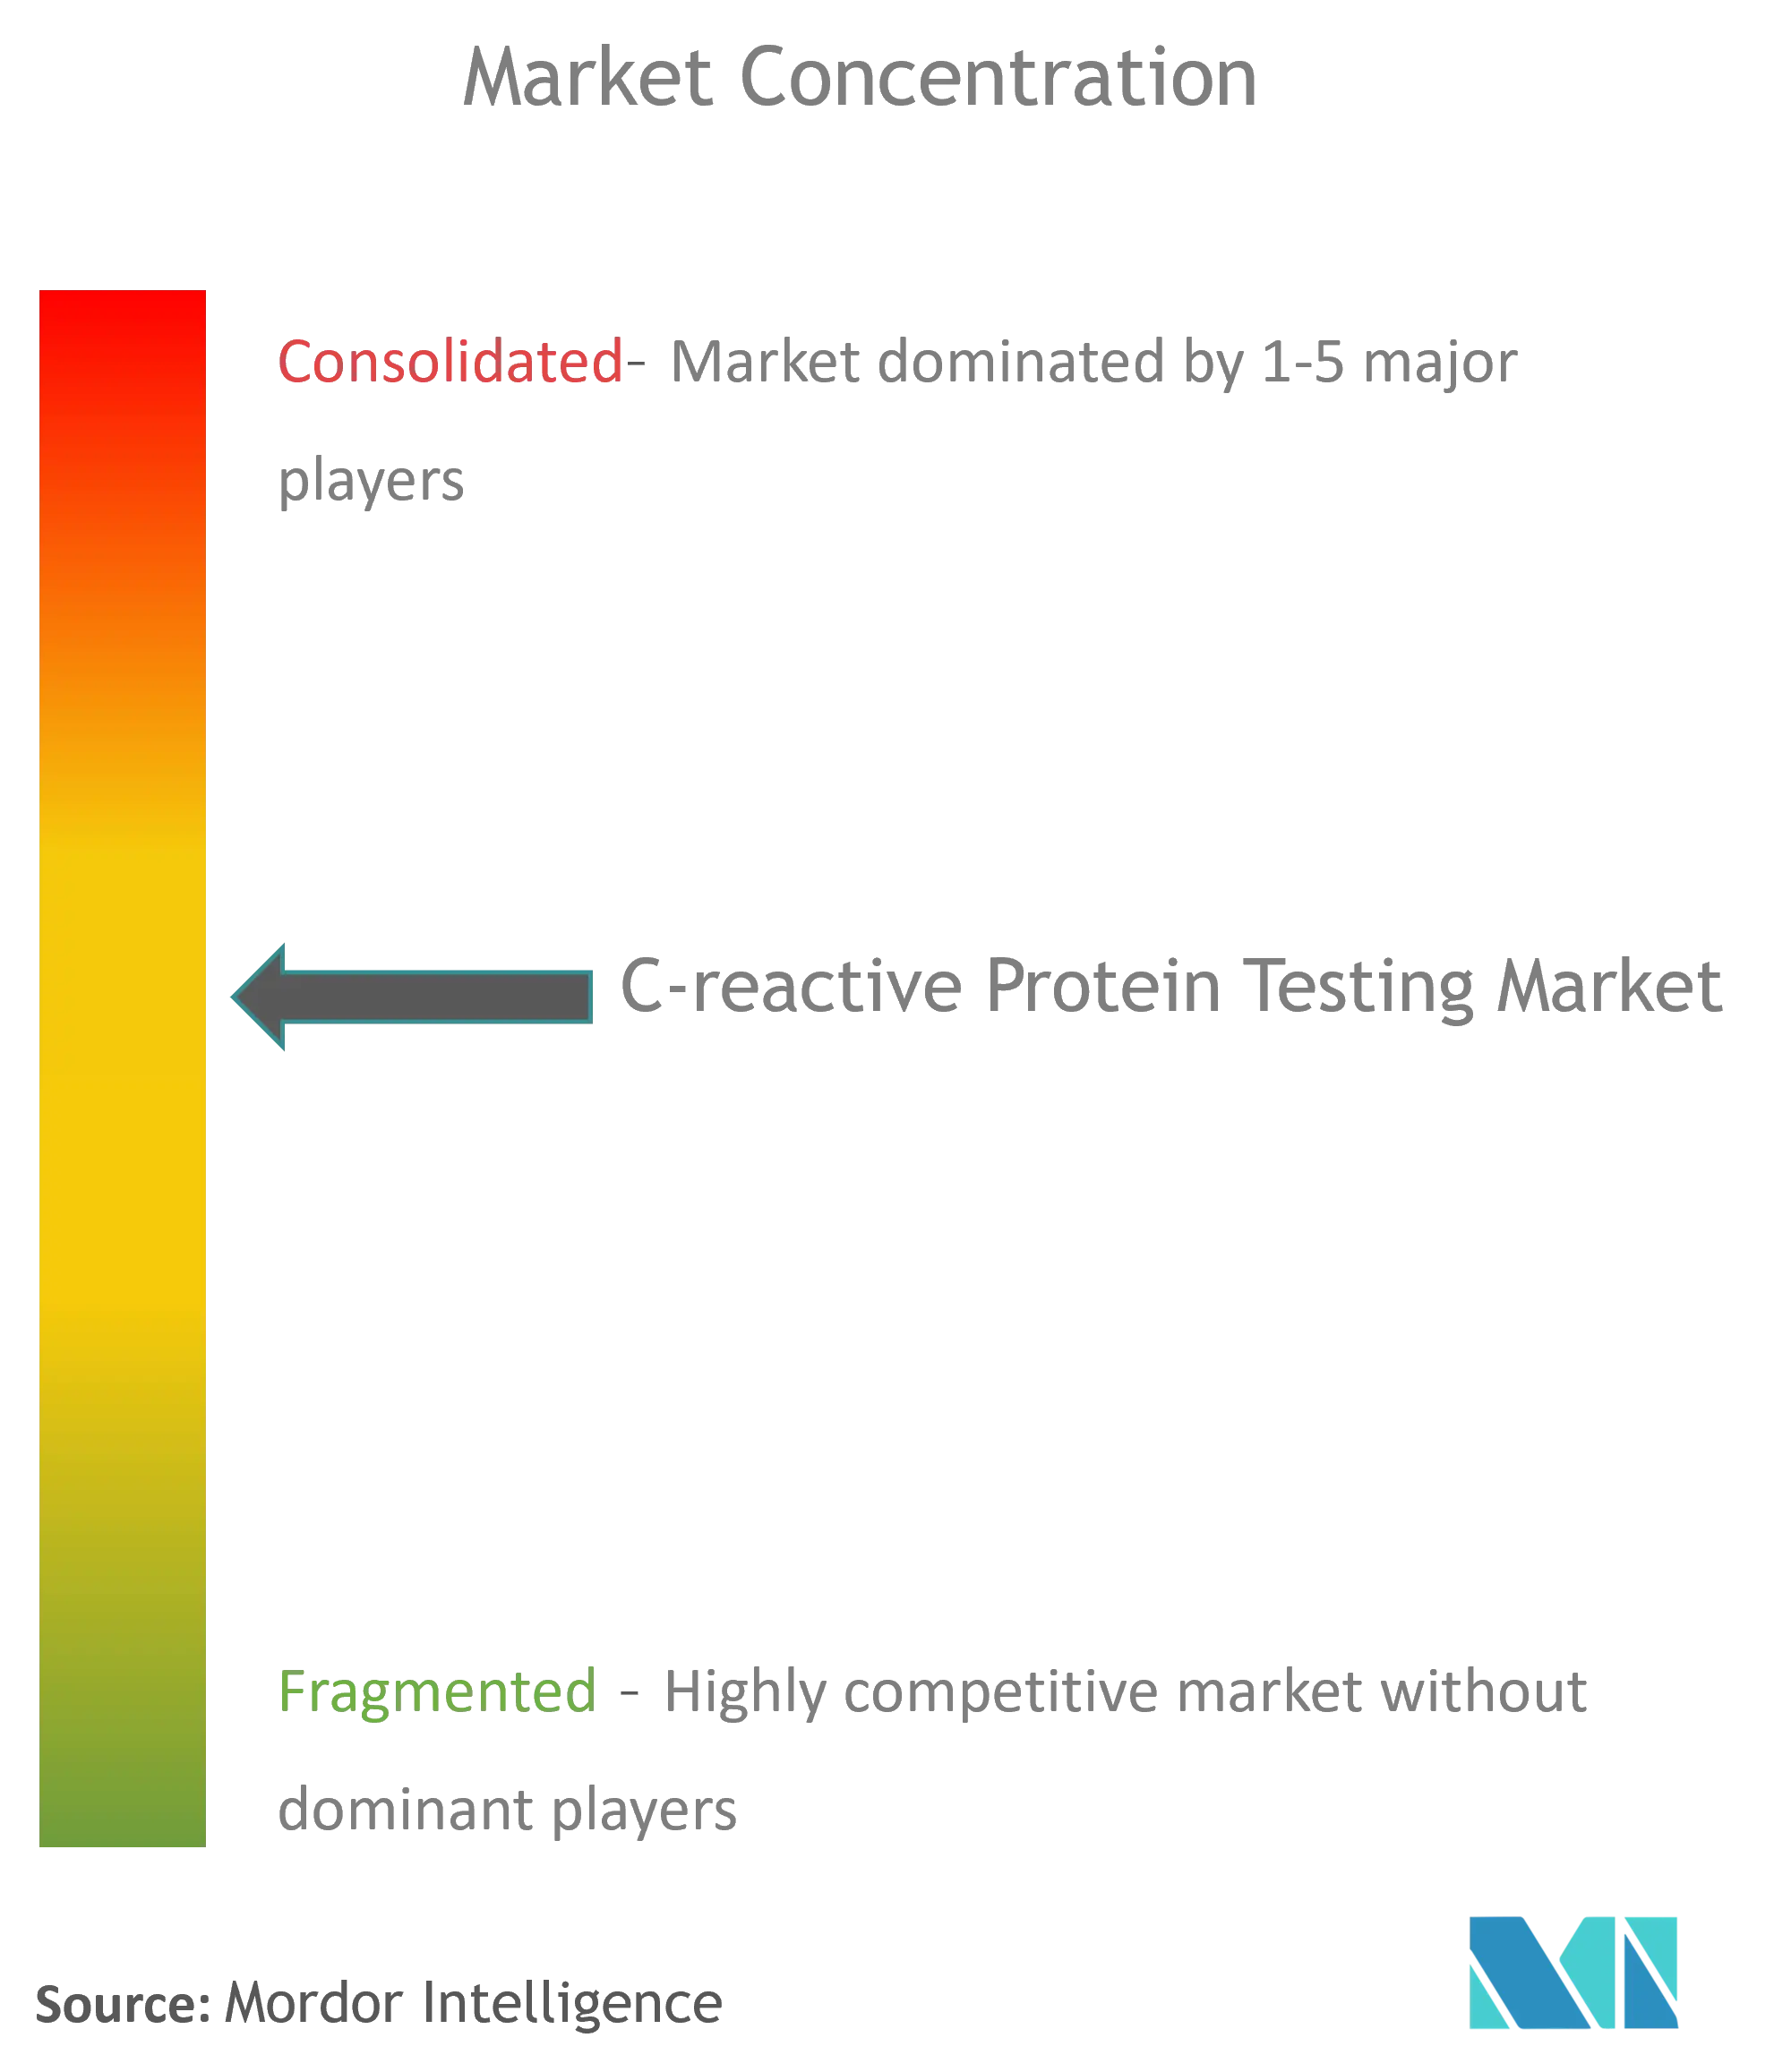 Tests mondiaux de protéines C-réactivesConcentration du marché